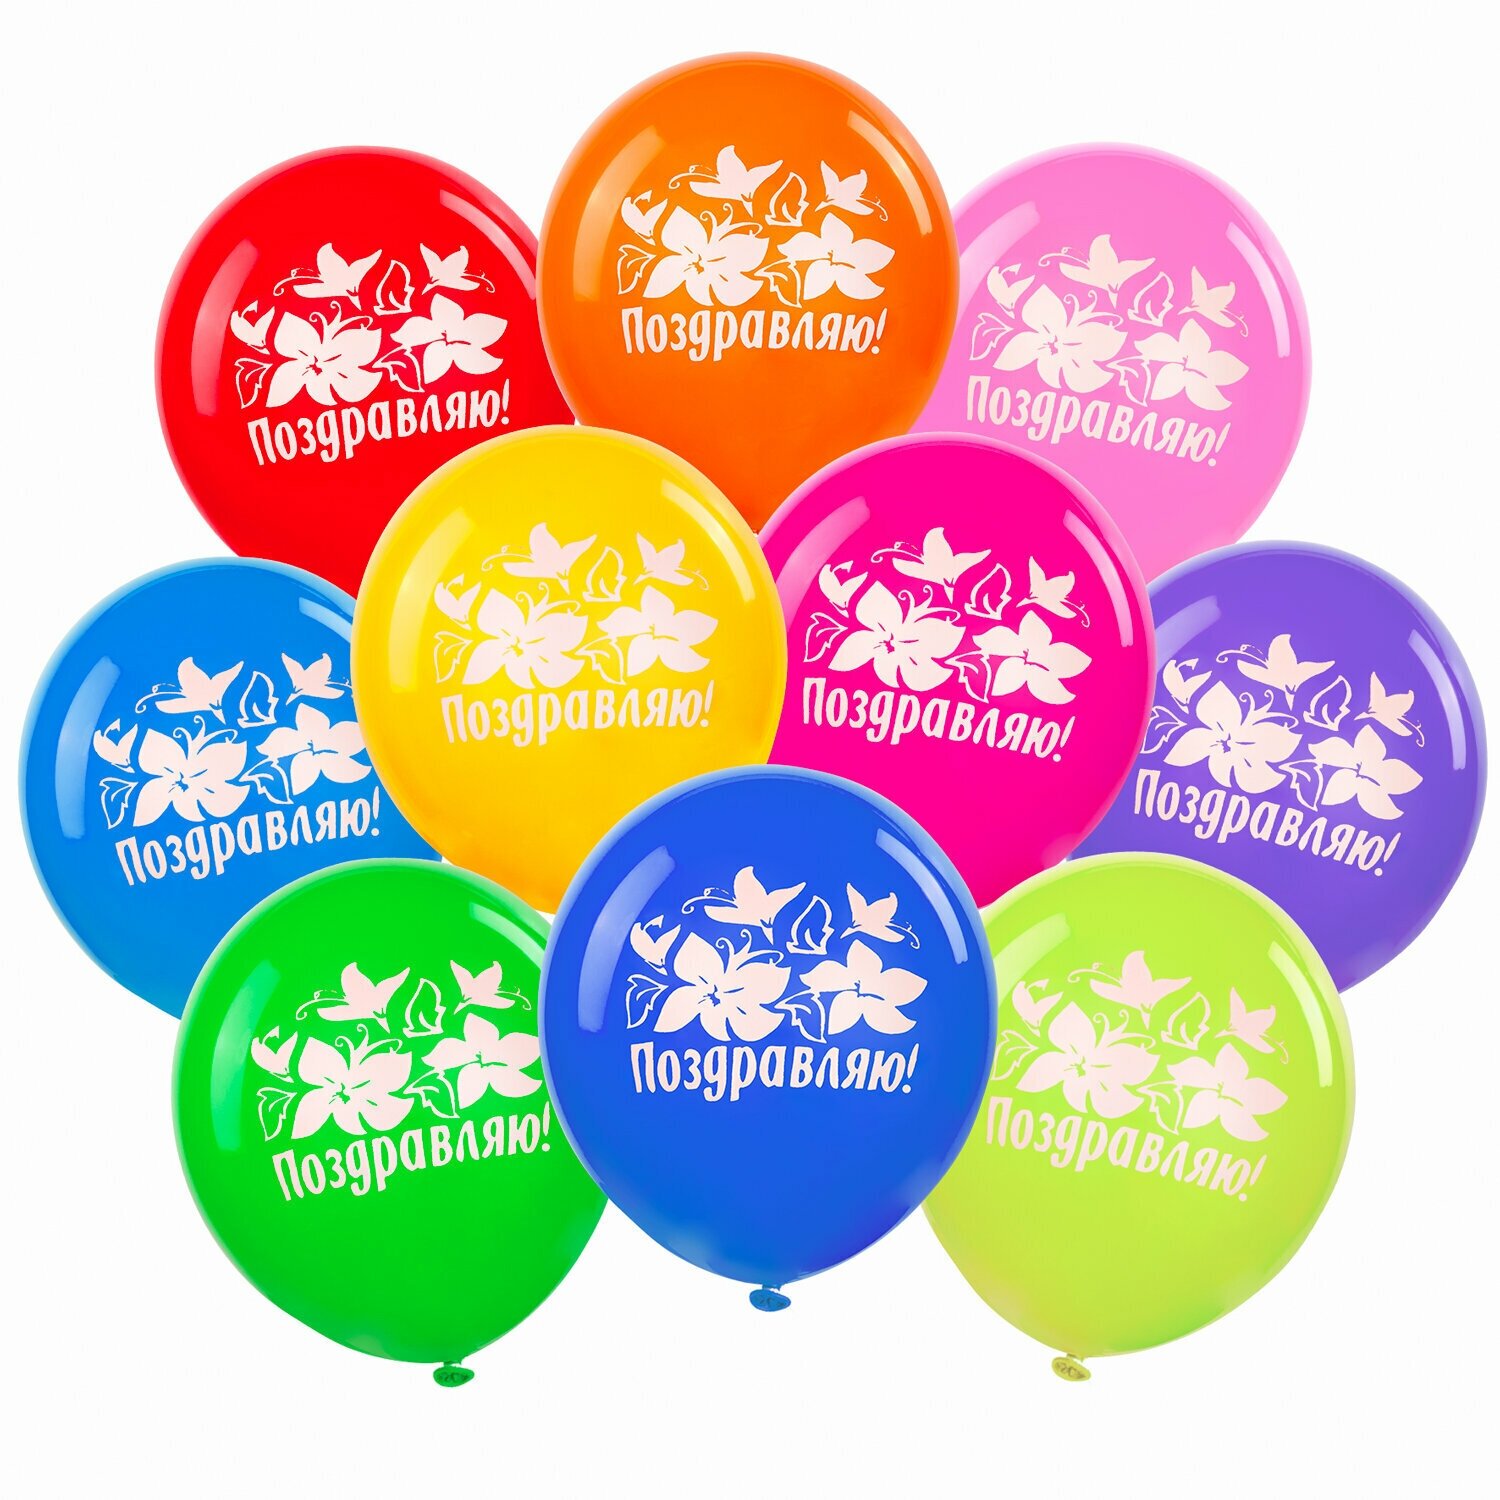 Воздушные шары для праздника, воздушные шарики набор на день рождения Золотая Сказка, 12" (30 см), 50 штук, 10 цветов, с рисунком Поздравляю